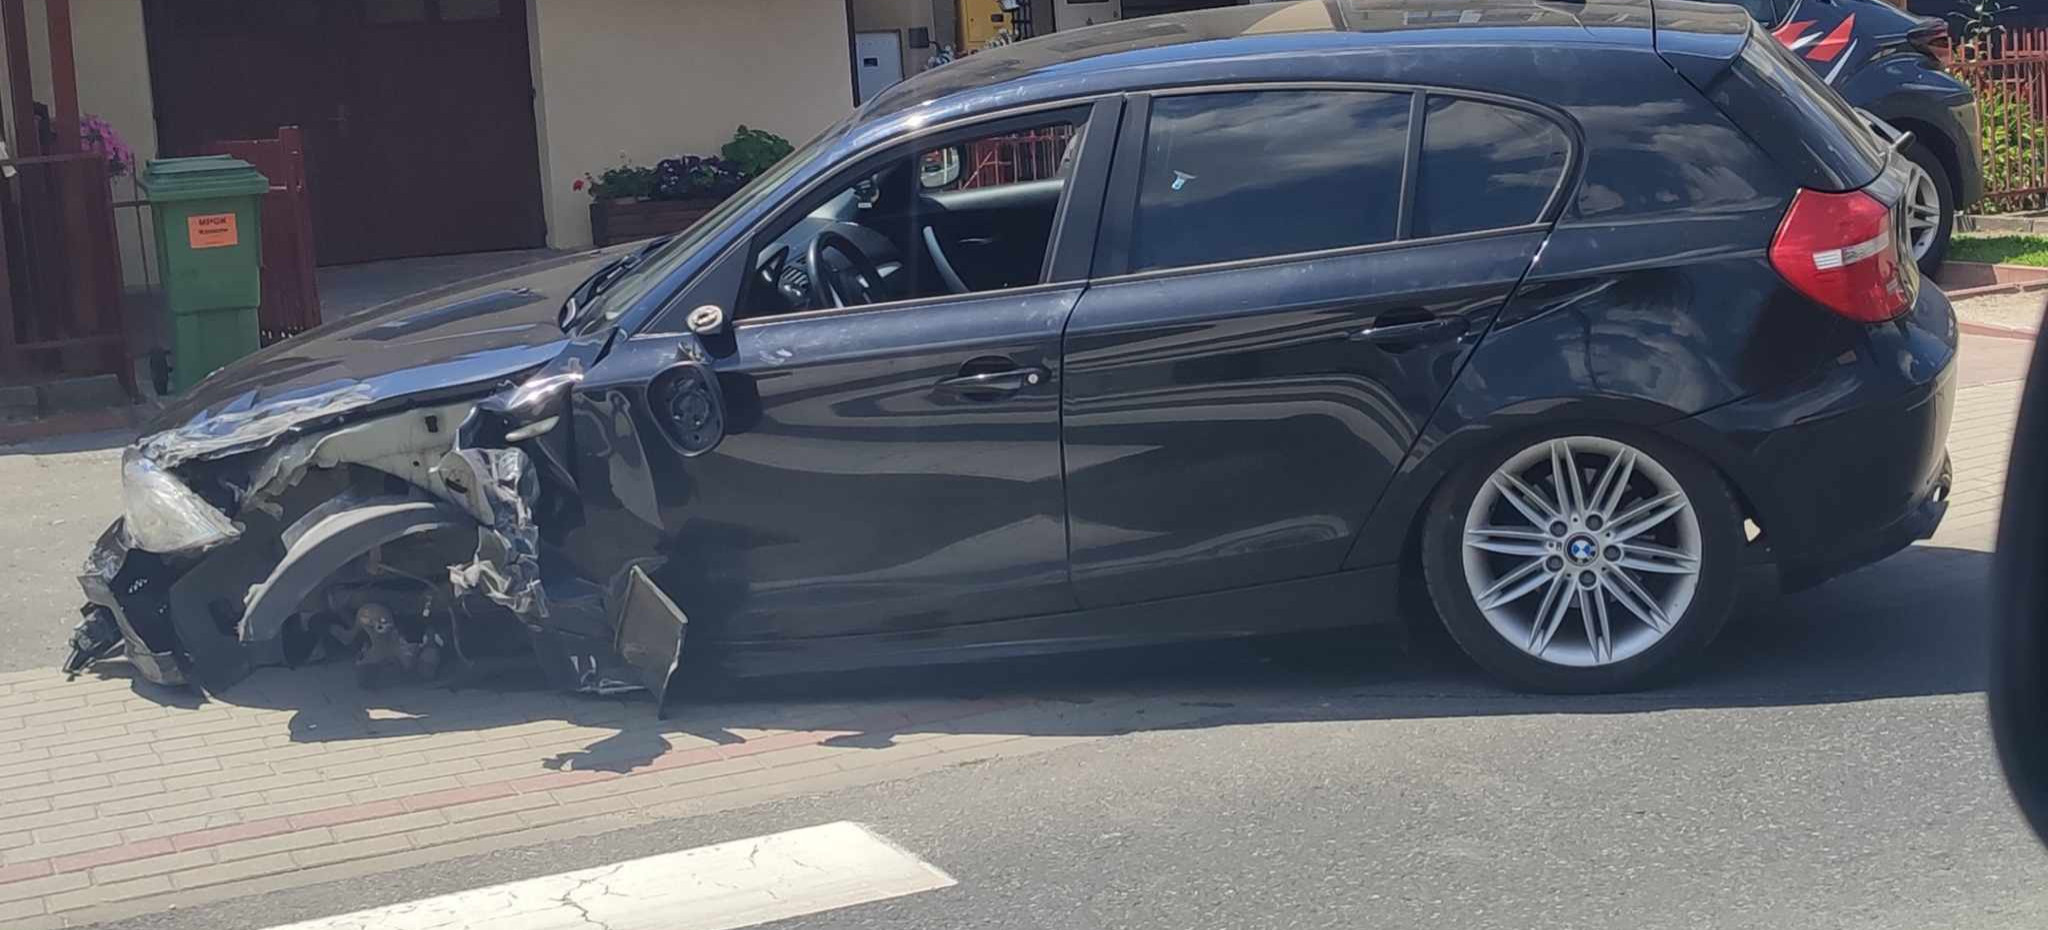 RZESZÓW. Kierowca BMW spowodował wypadek i uciekł z miejsca zdarzenia (ZDJĘCIA)